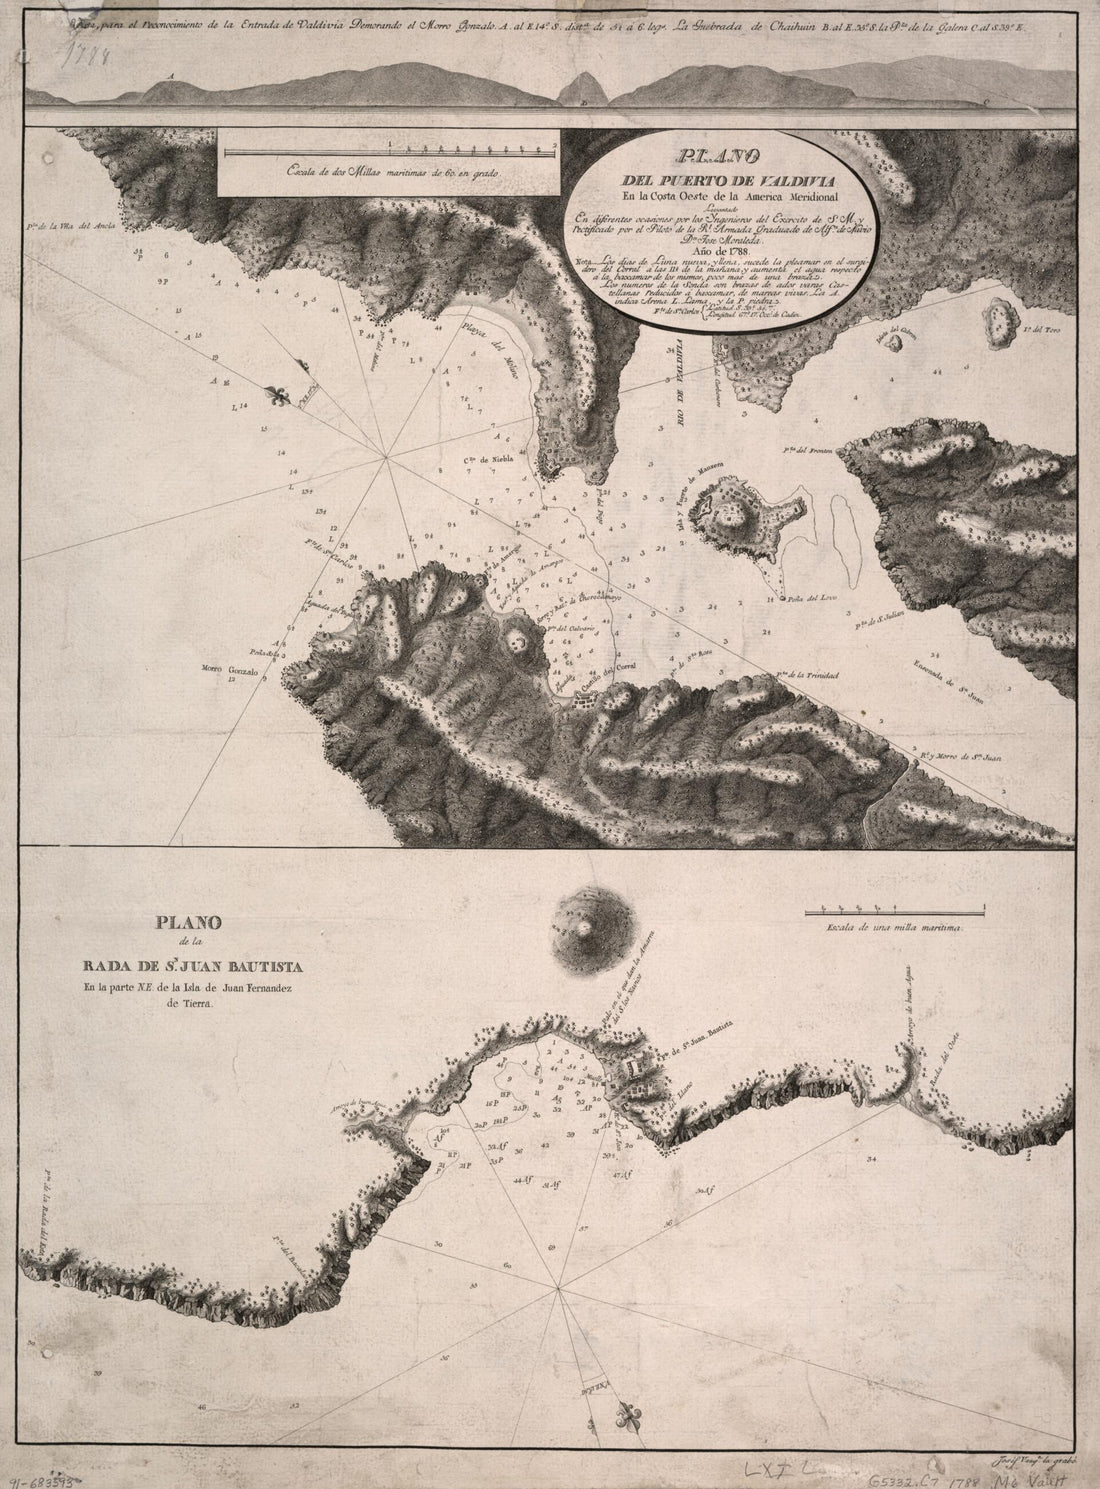 This old map of Plano Del Puerto De Valdivia En La Costa Oeste De La América Meridional from 1788 was created by José Manuel De Moraleda in 1788